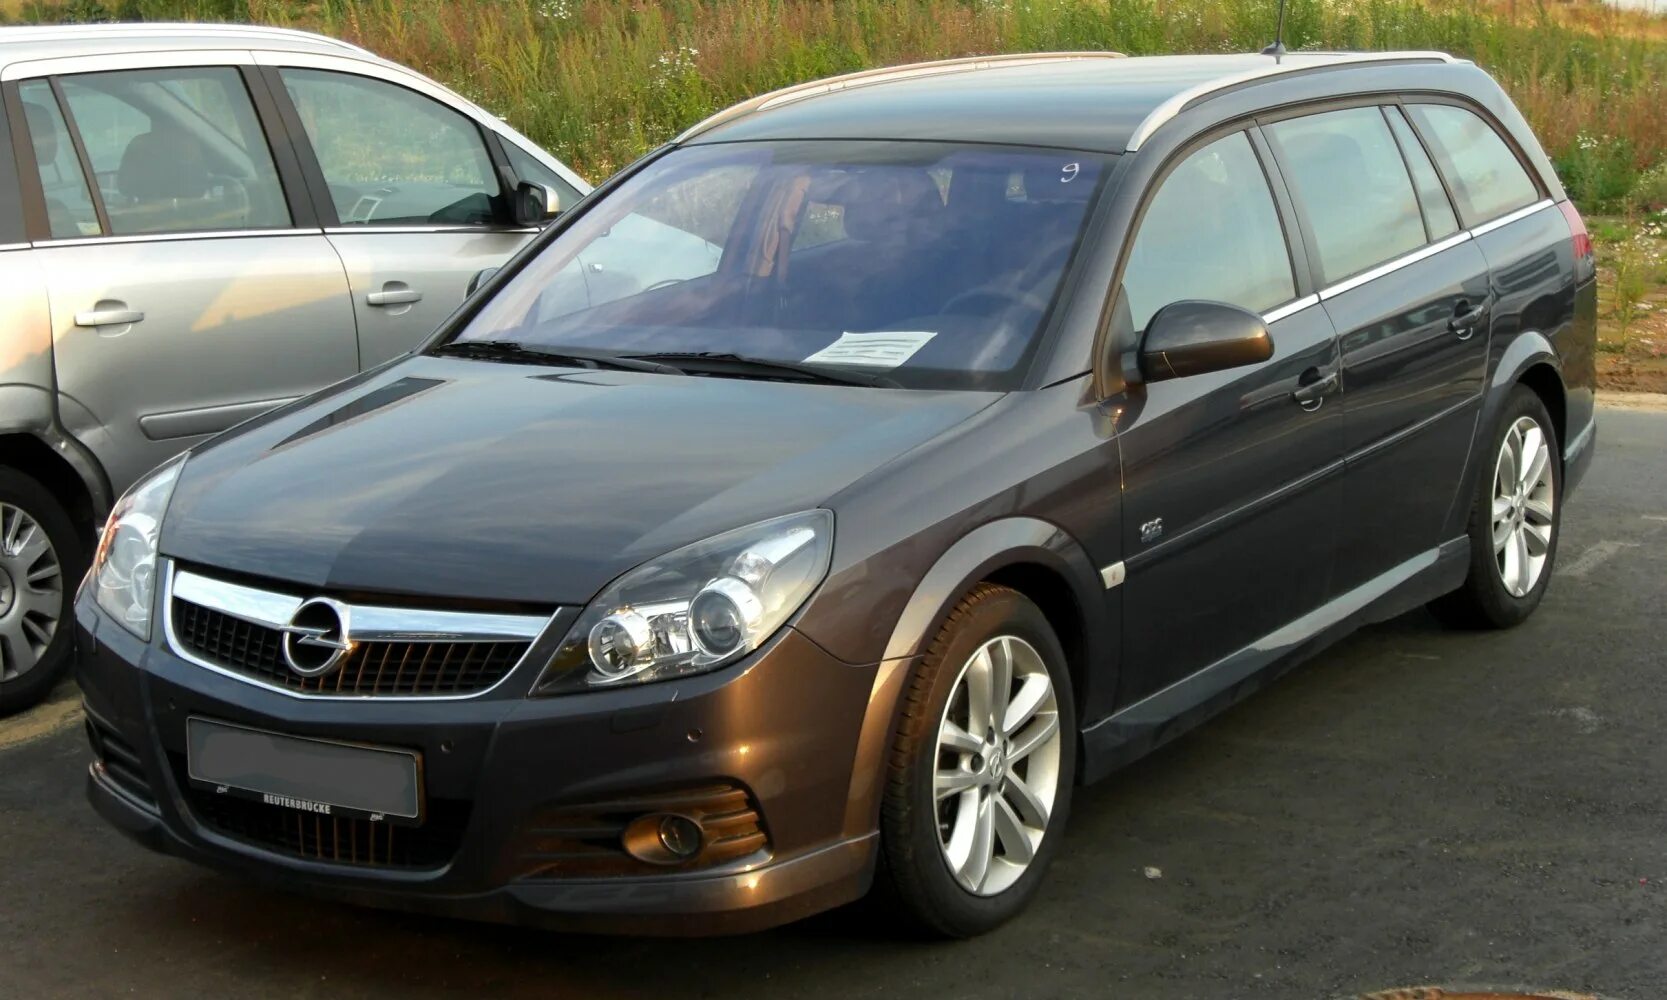 2006 г 2007 г 2008. Опель Вектра универсал 2008. Opel Vectra c 2008 универсал. Opel Vectra c 2005 универсал. Опель Вектра 2007 универсал.